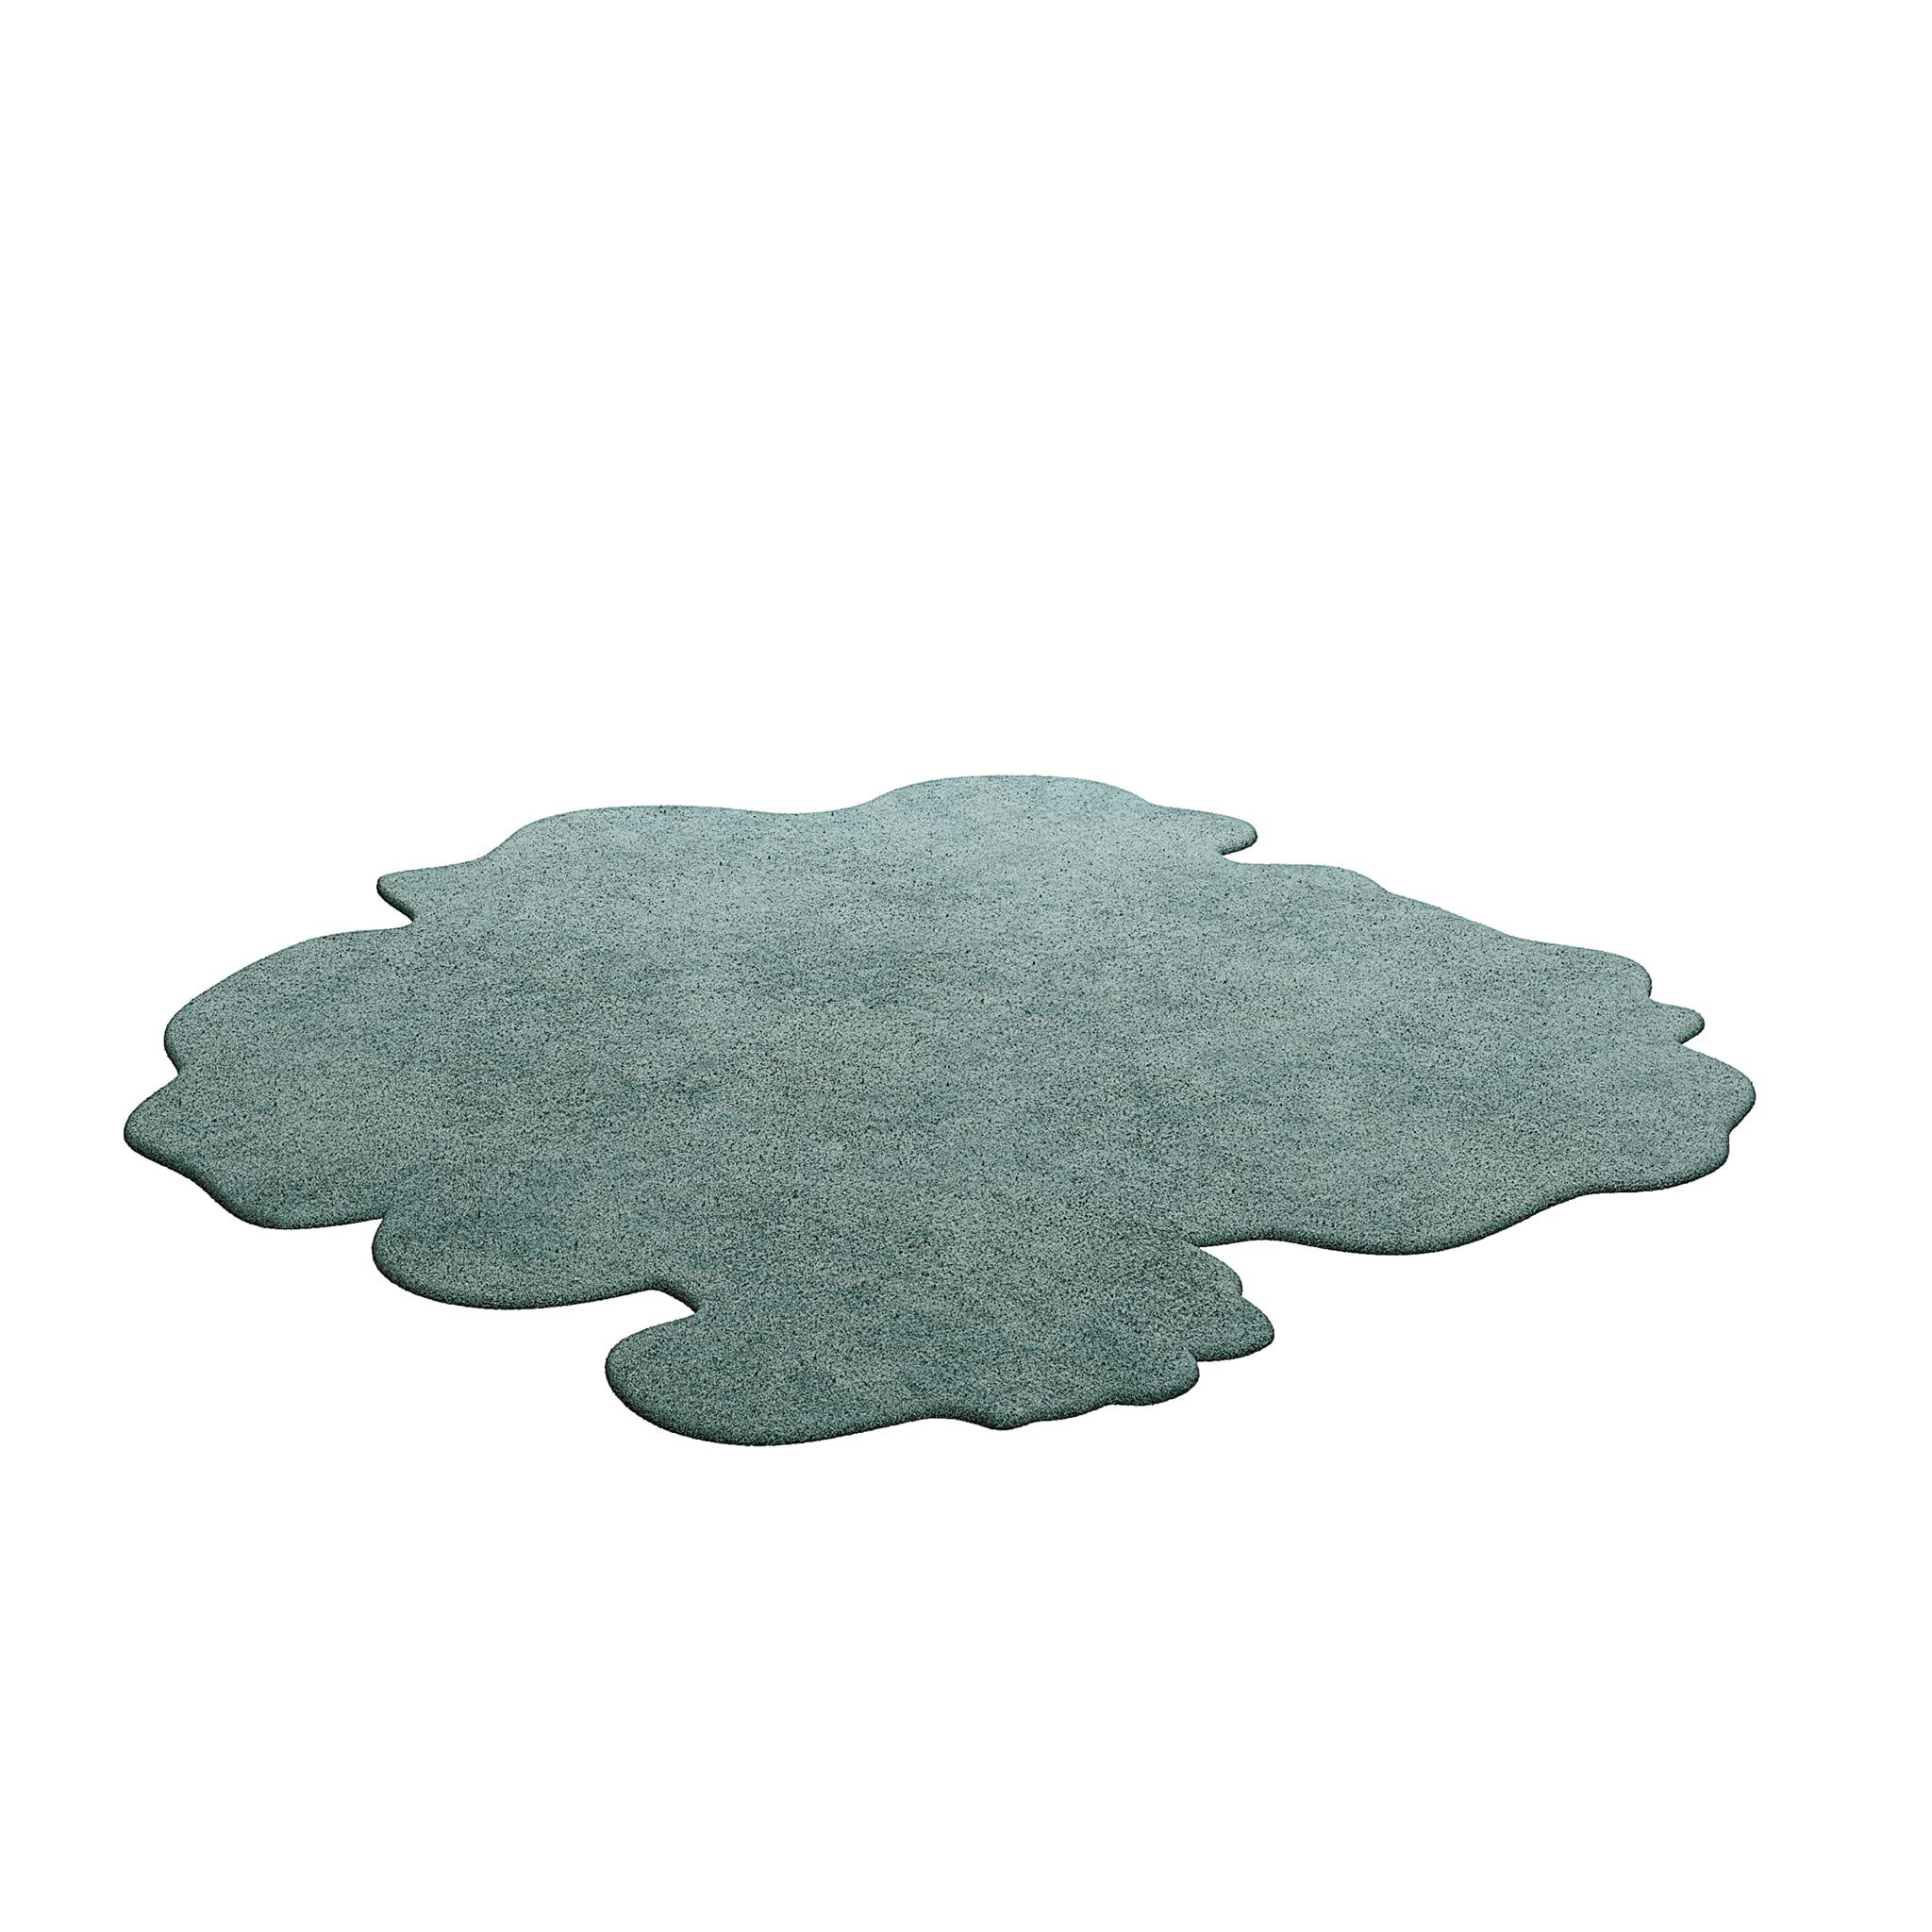 TAPIS Essential #004 ist ein moderner Teppich mit einer coolen Form. Unsere unentbehrlichen Teppiche sind in verschiedenen Formen und trendigen Farbtönen erhältlich, die mit Bedacht ausgewählt wurden, um eine Inneneinrichtung zu ergänzen, die sich